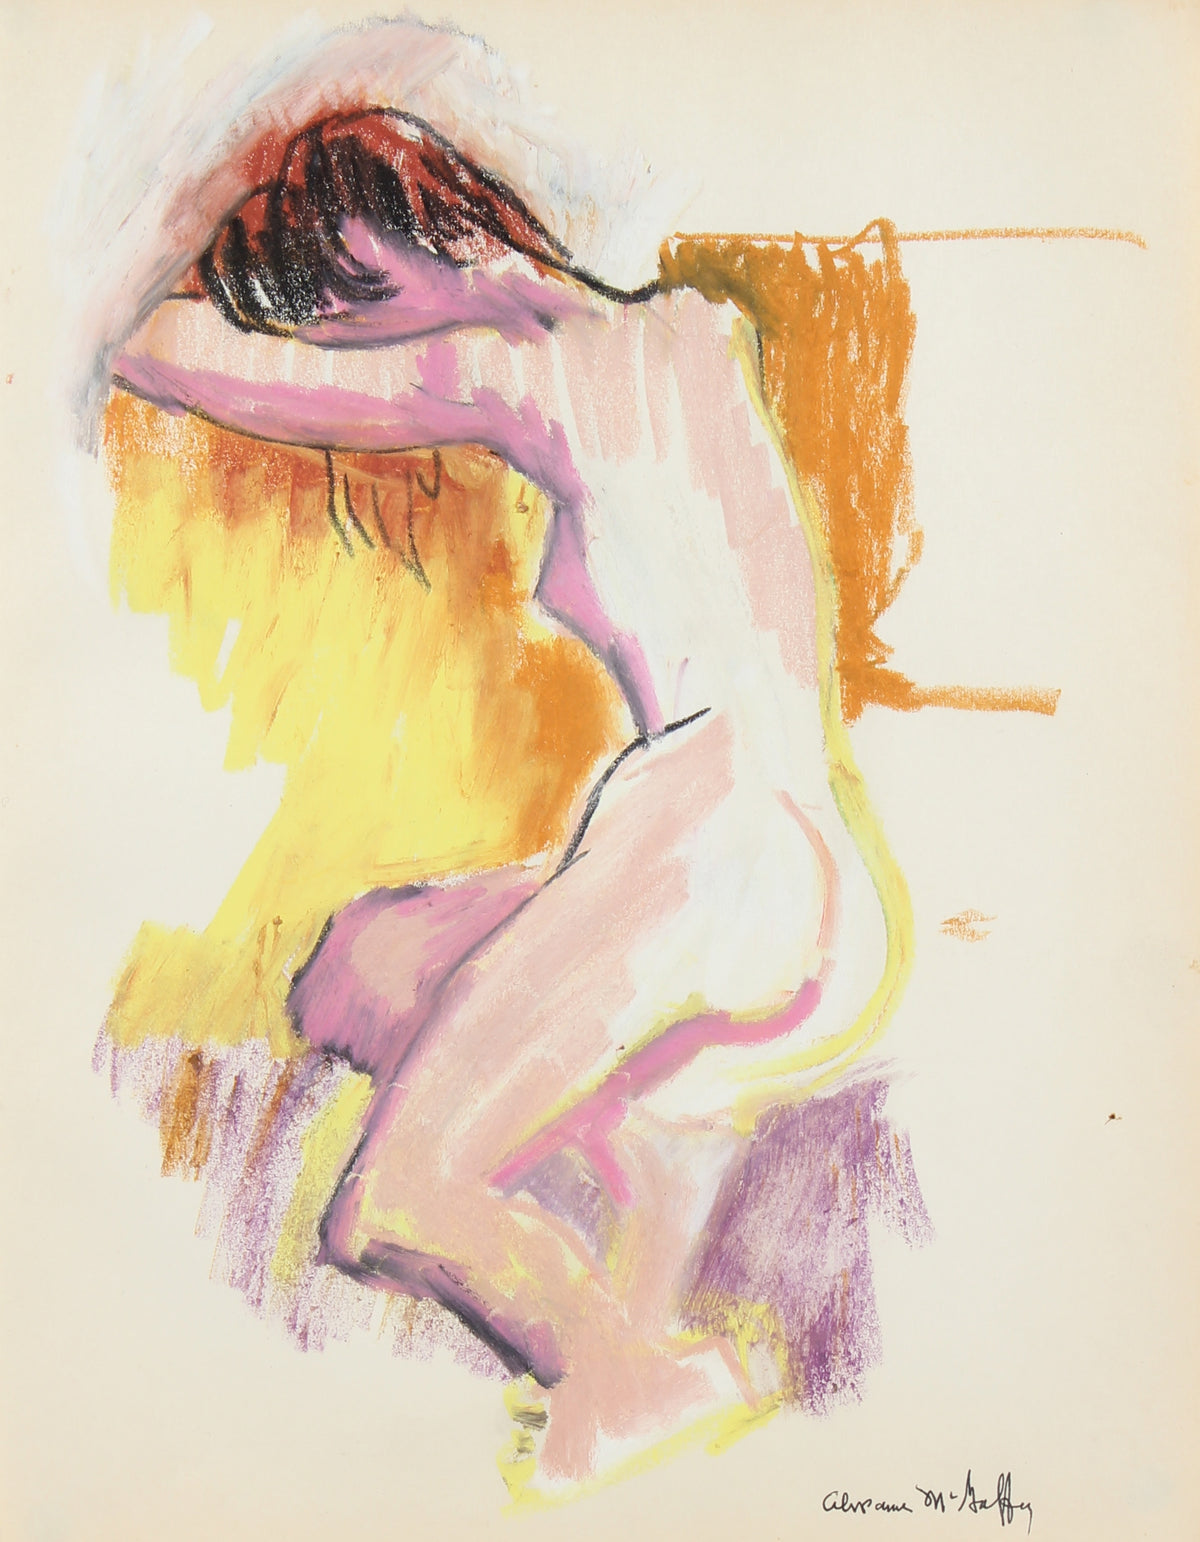 Colorful Female Nude &lt;br&gt;1950-60s Oil Pastel &lt;br&gt;&lt;br&gt;#22945